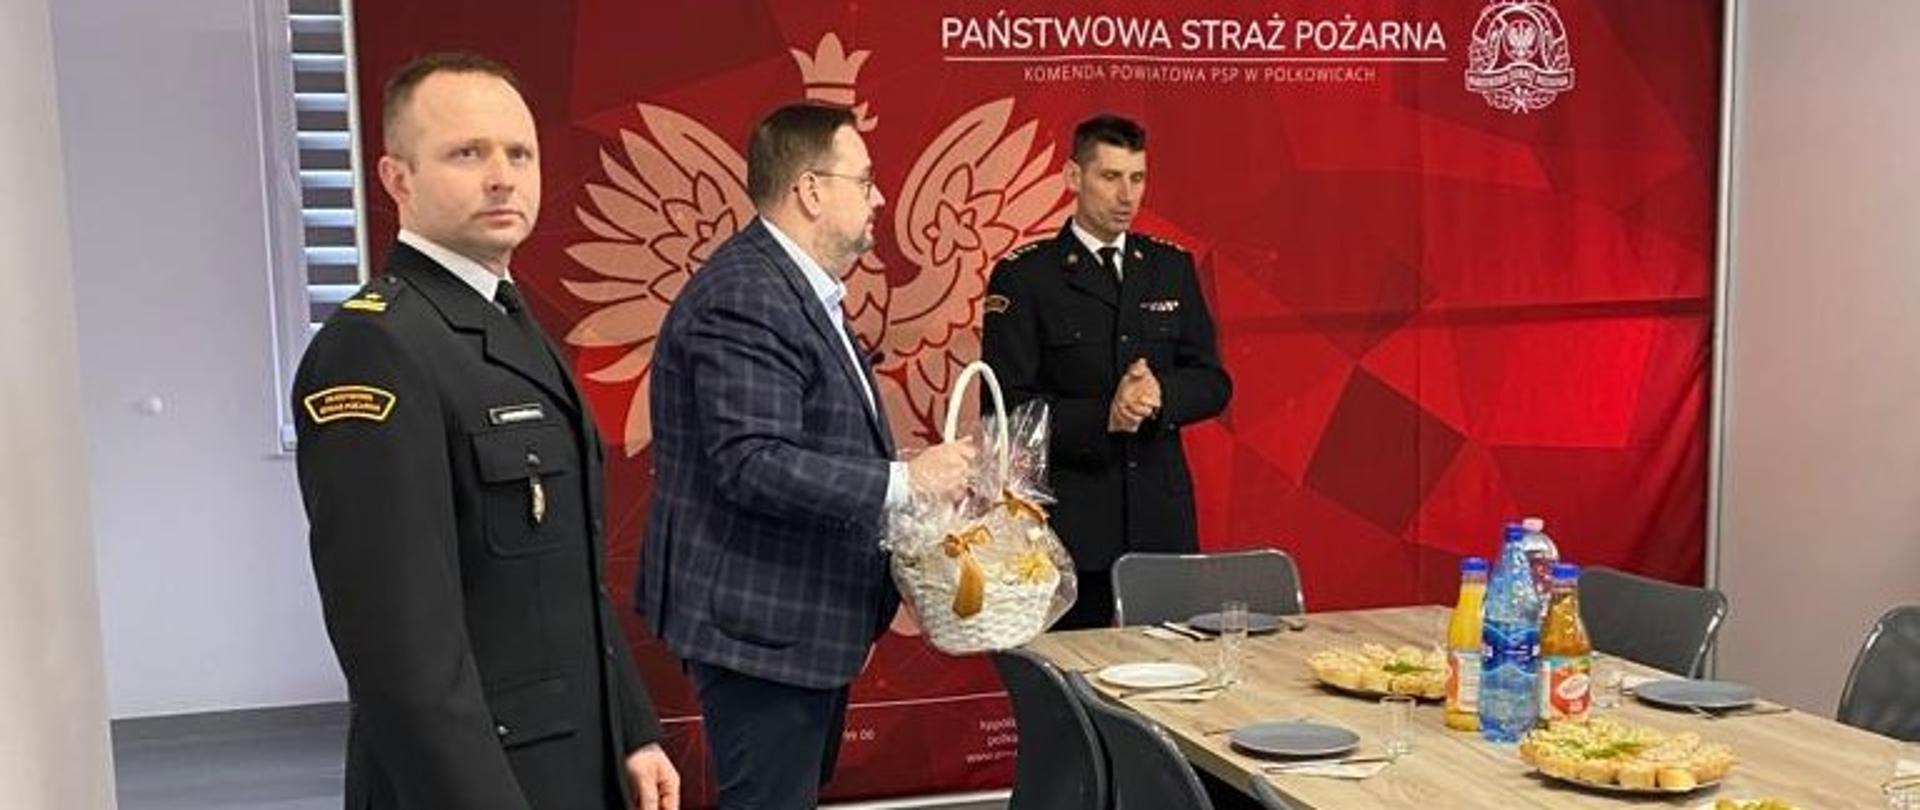 Komendant Powiatowy PSP w Polkowicach oraz Burmistrz Polkowi